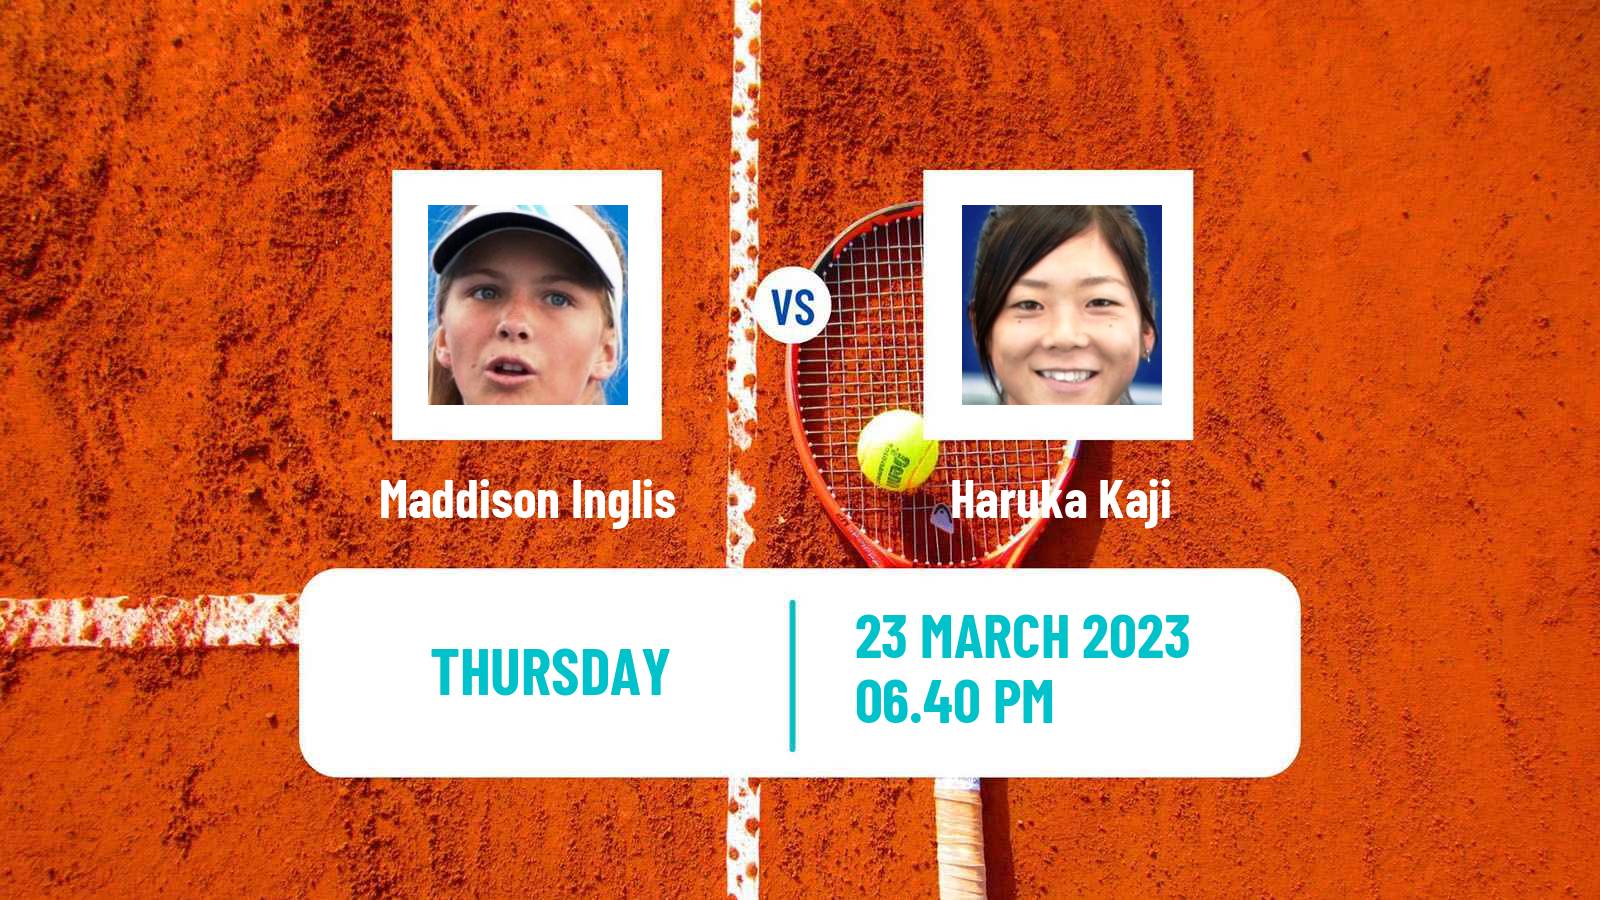 Tennis ITF Tournaments Maddison Inglis - Haruka Kaji